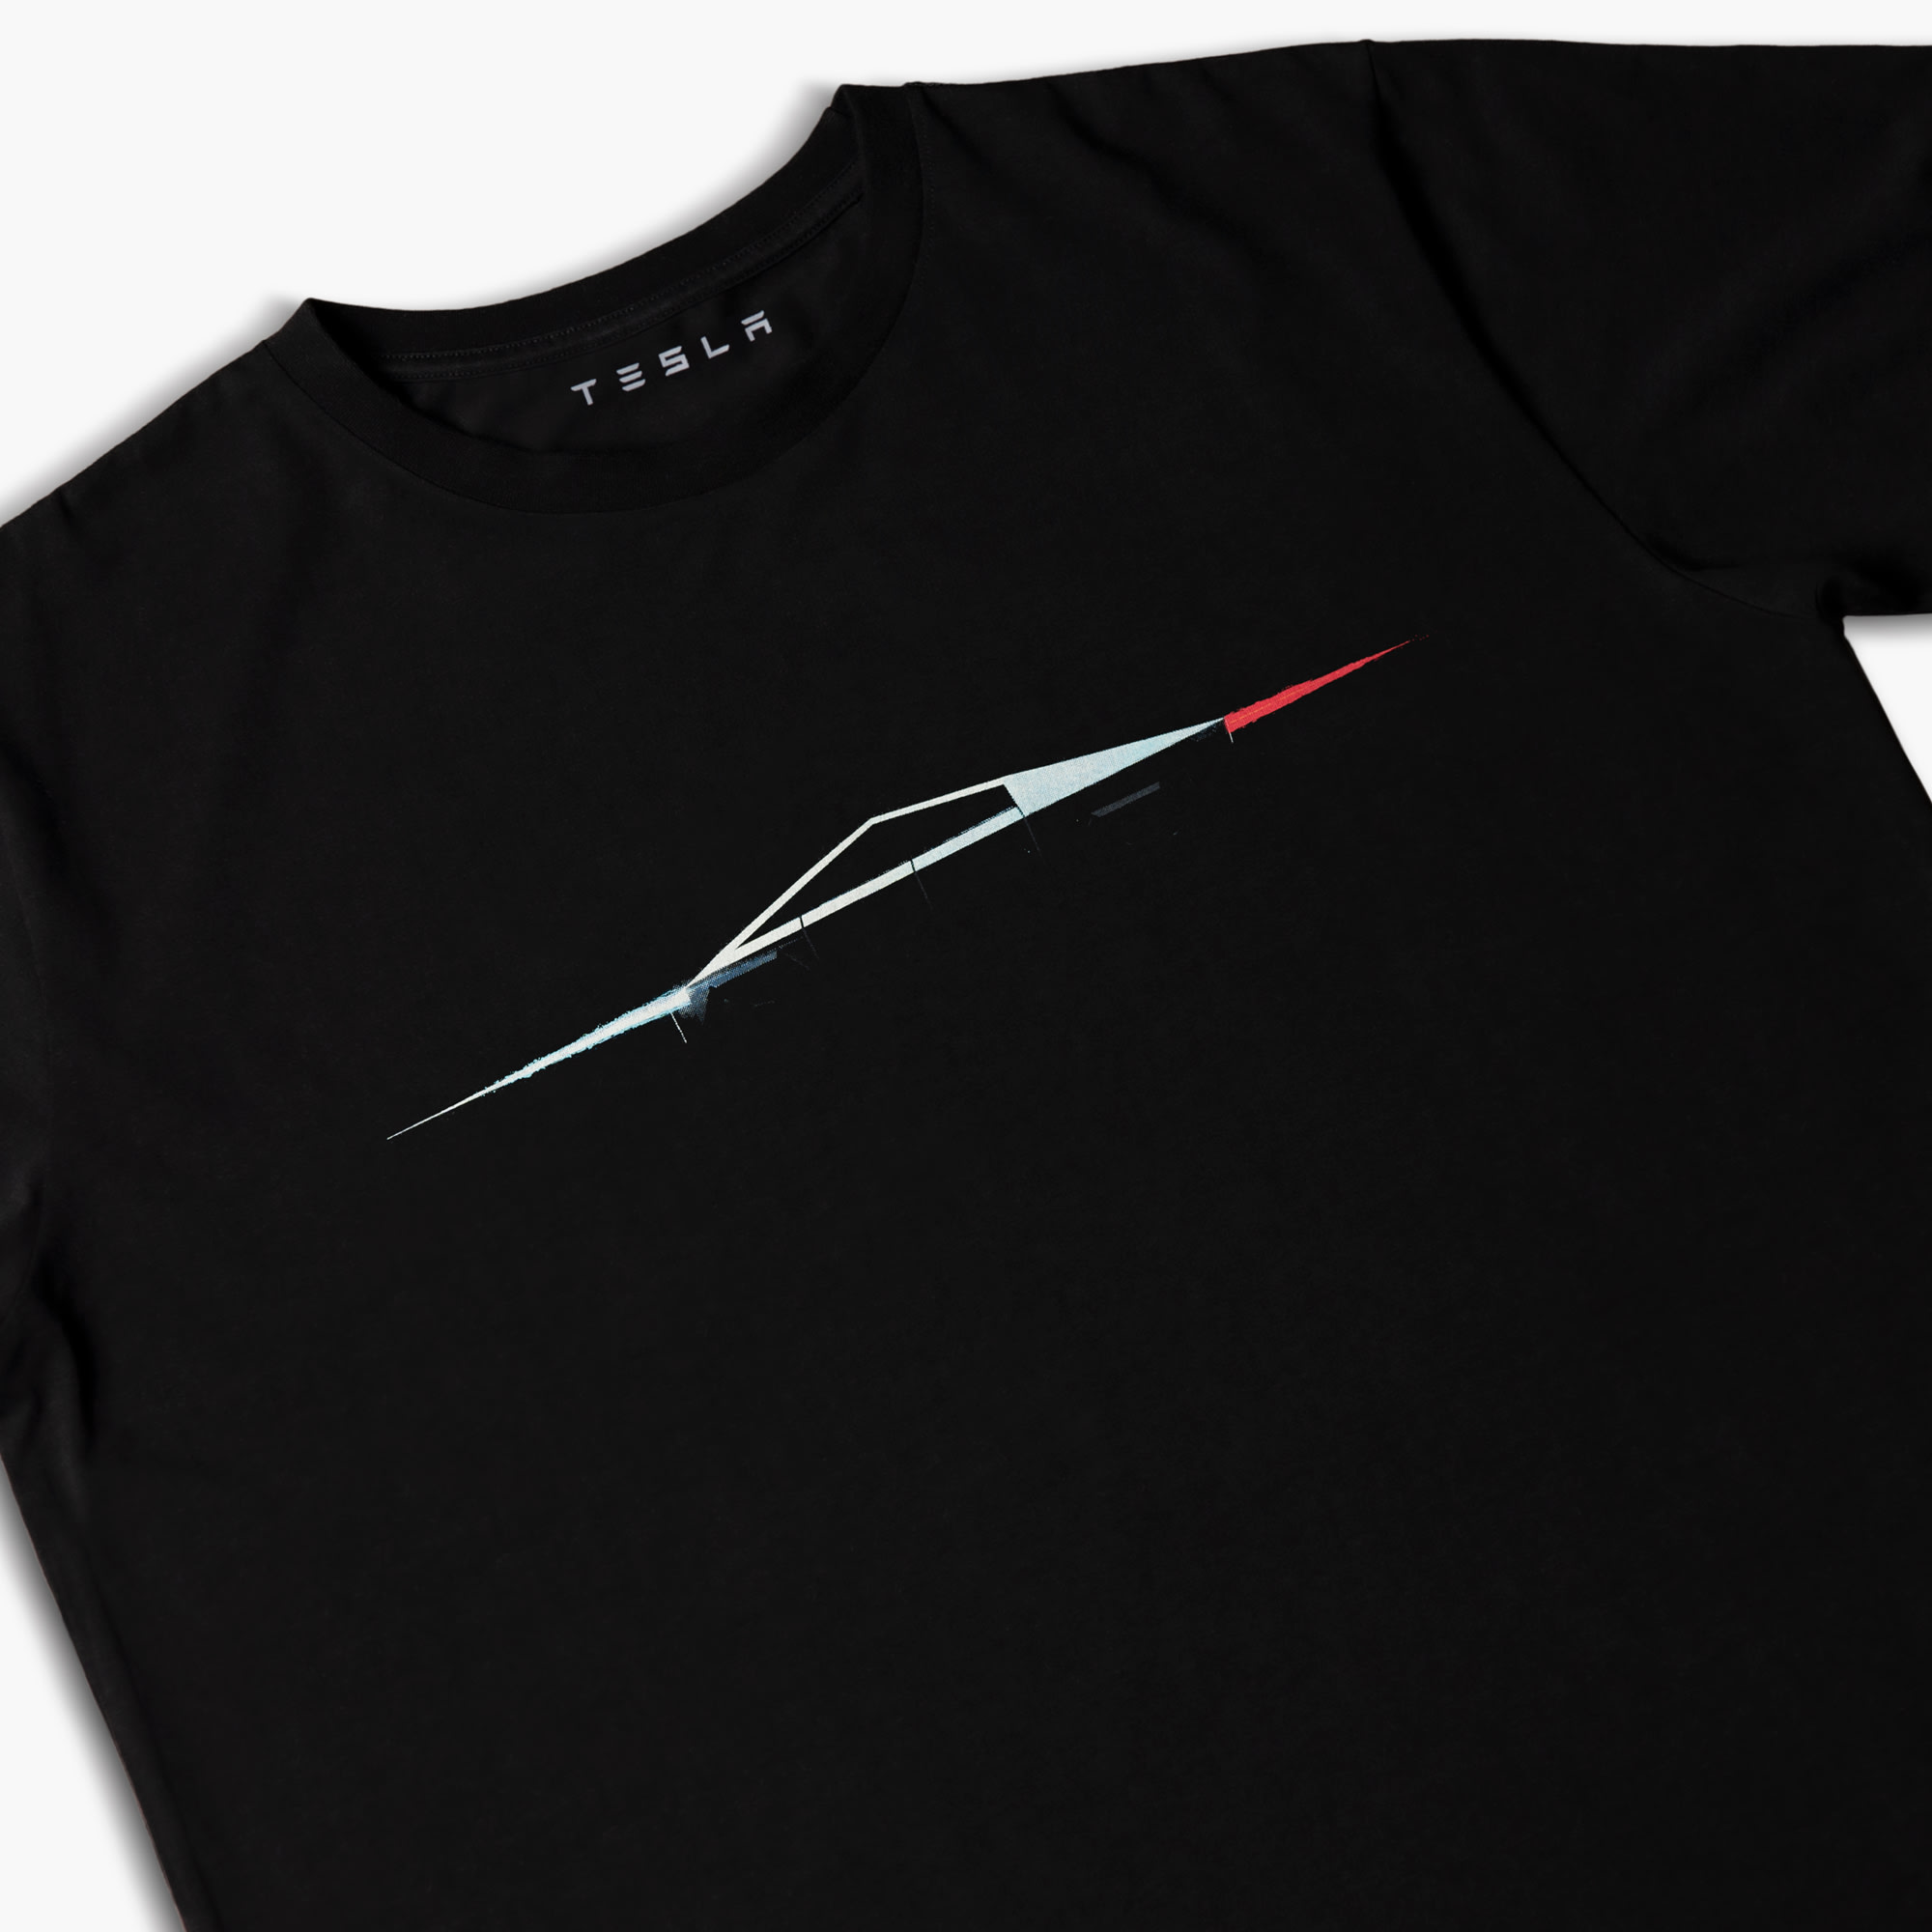 Tesla Cybertruck shirt